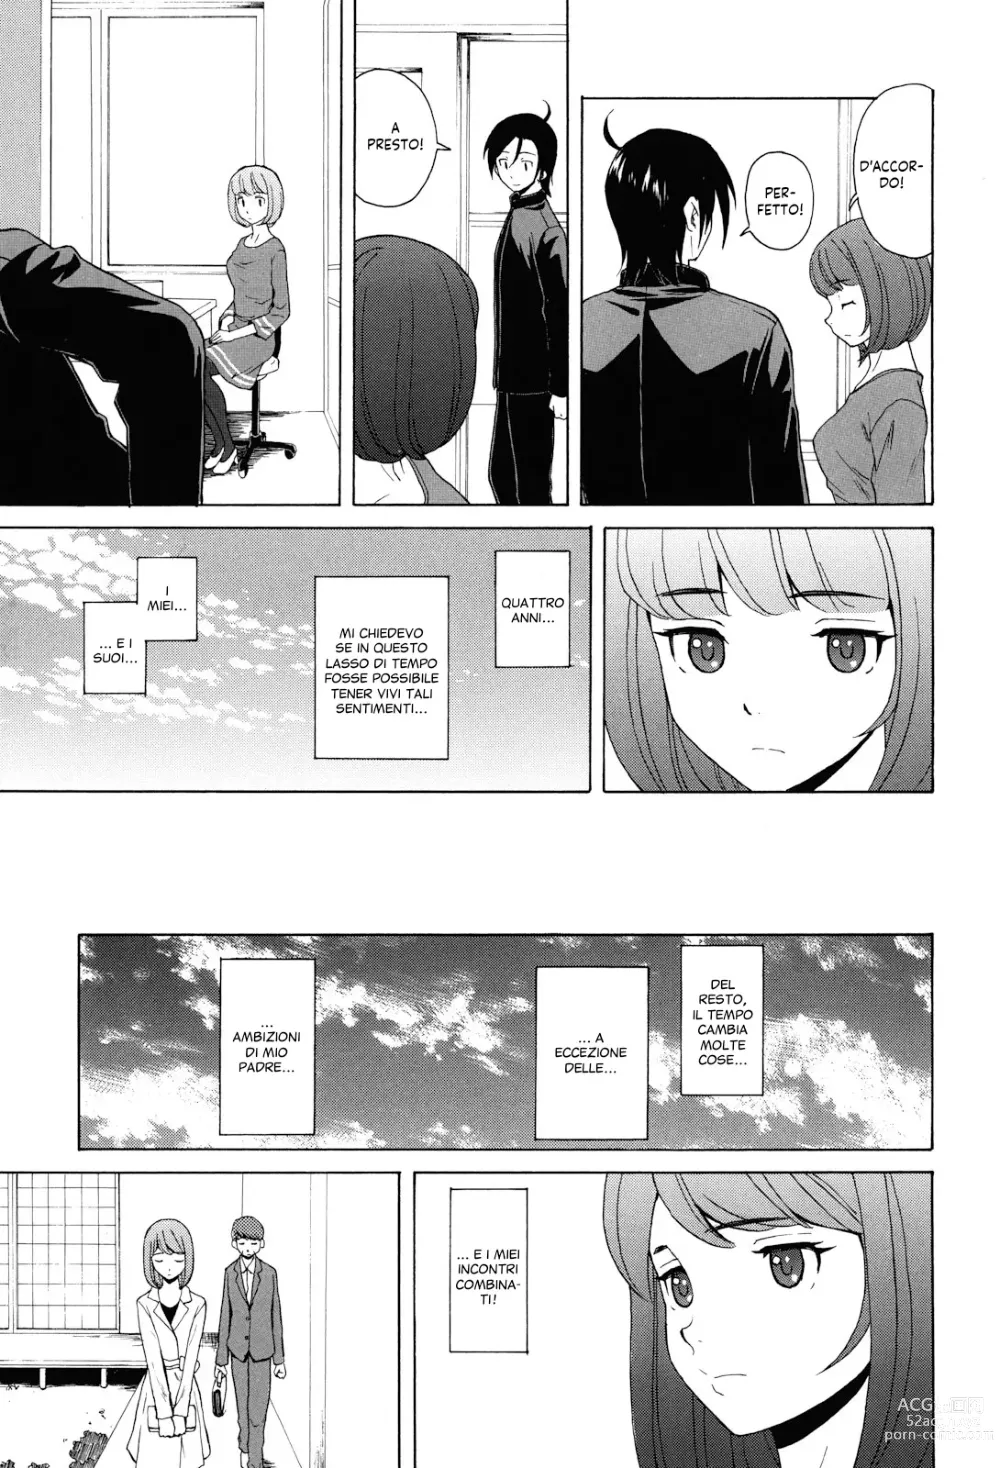 Page 242 of manga Sei Gentilmente Desiderato dalla tua Prof (decensored)